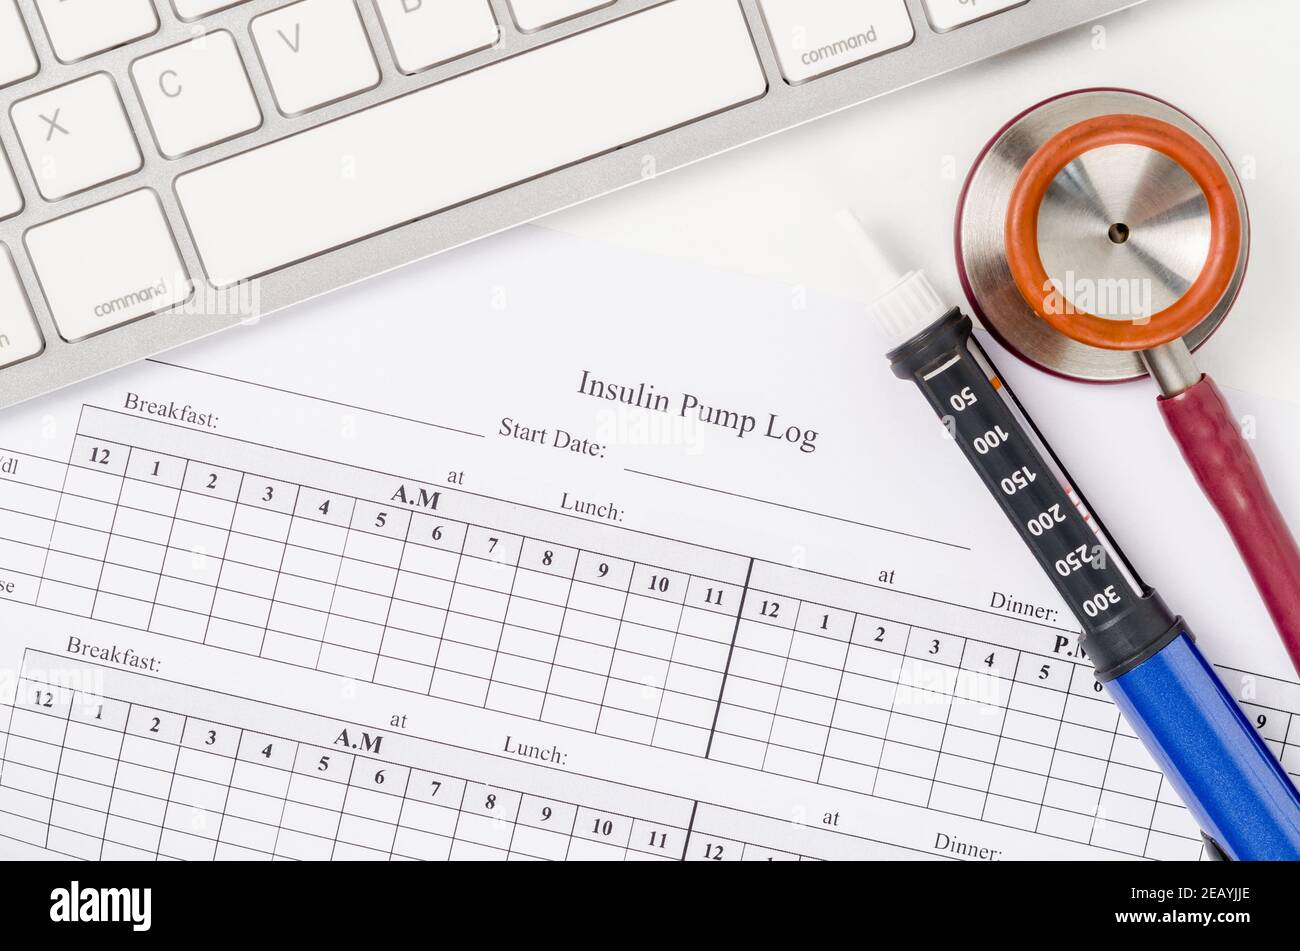 Formulaire d'enregistrement du journal de la pompe à insuline et seringue avec insuline pour le patient. Banque D'Images